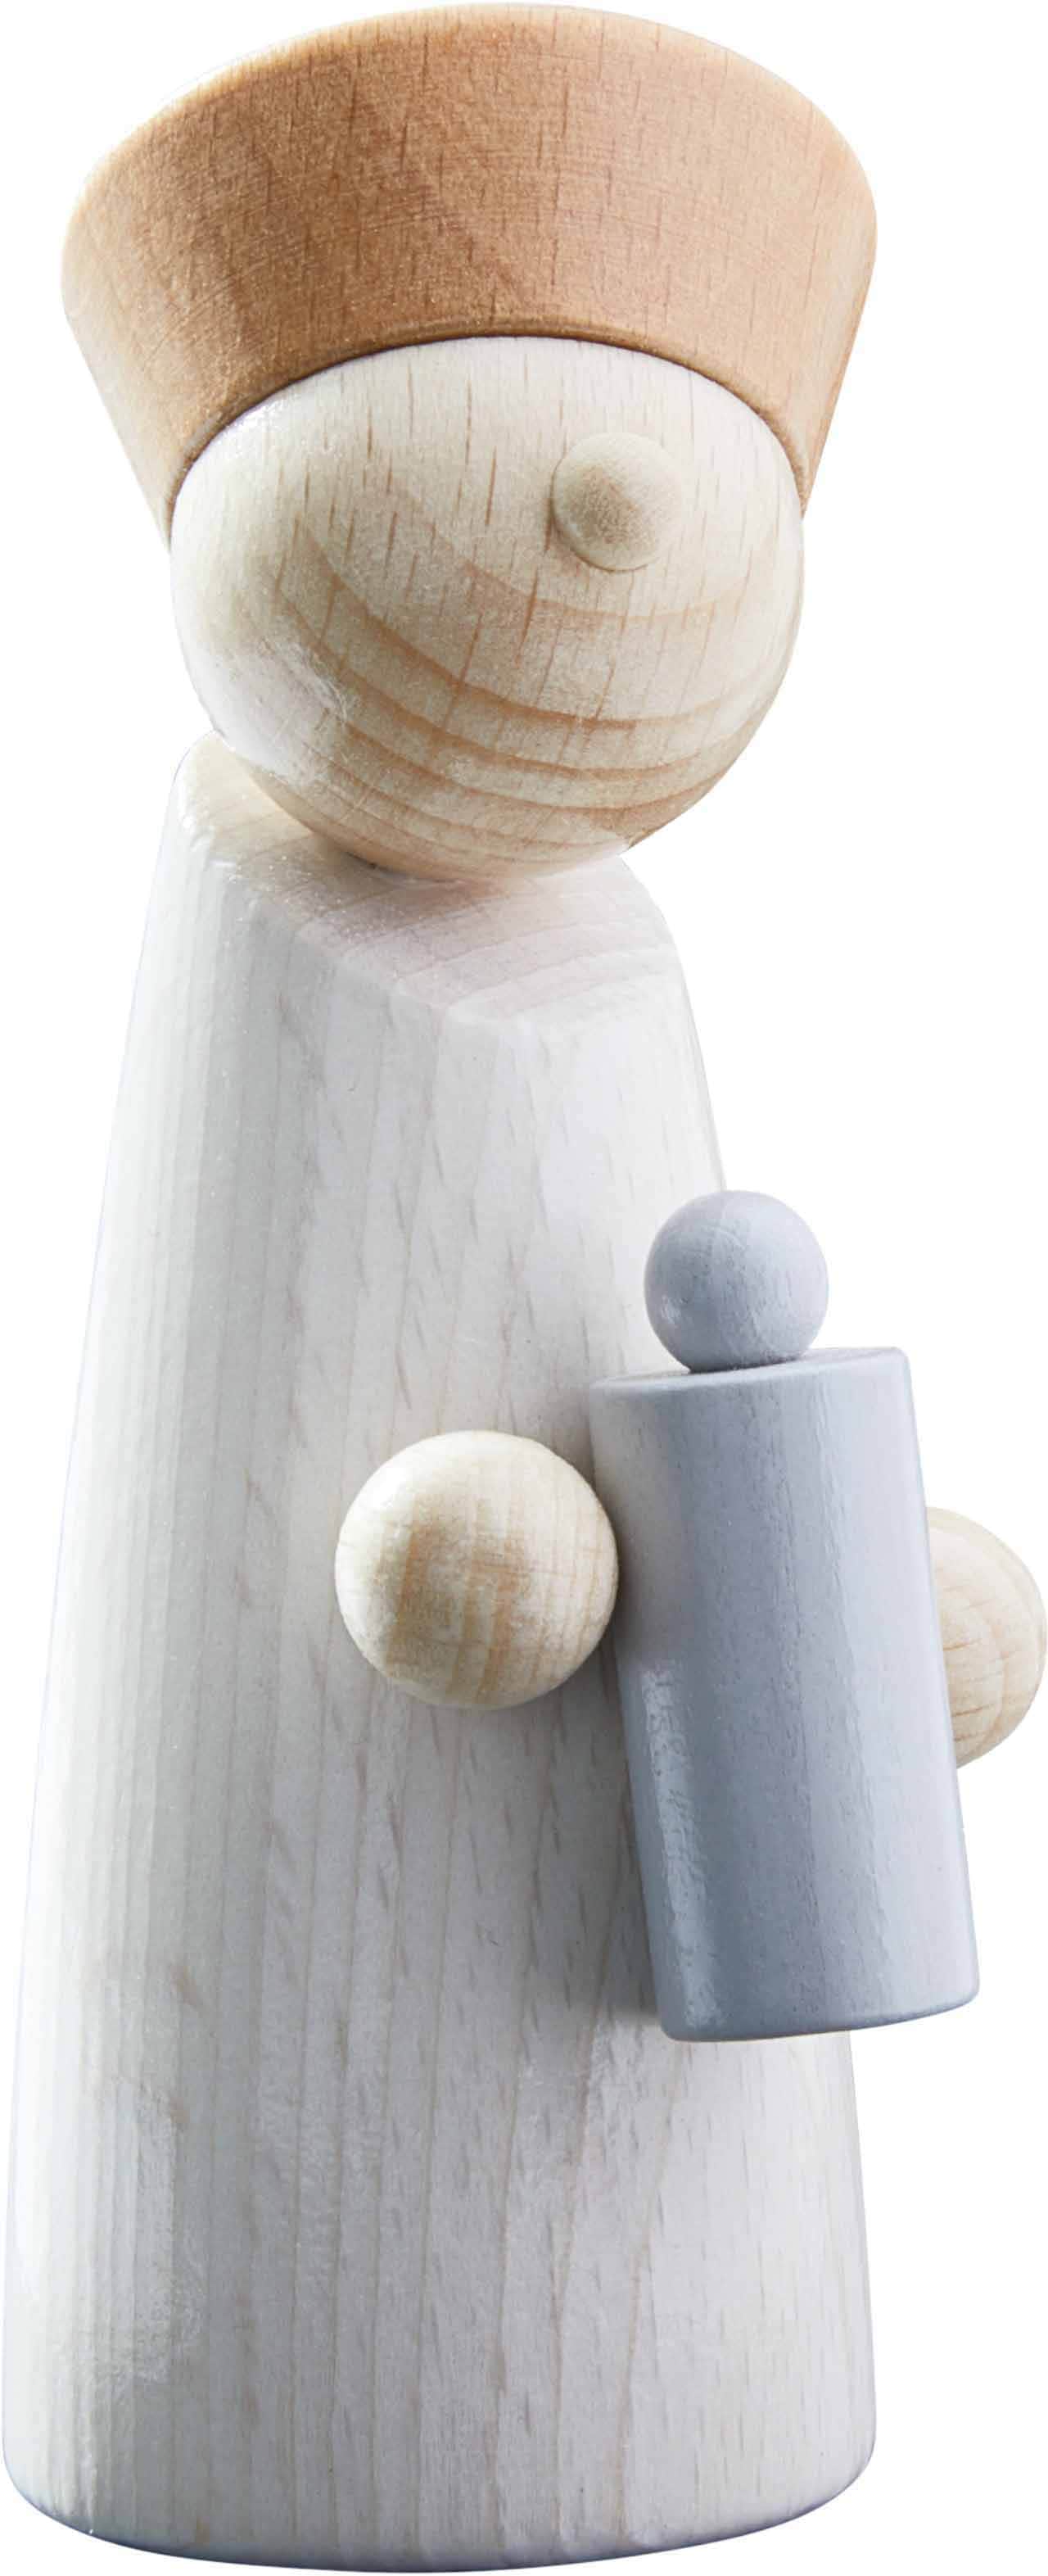 OTTO »Holzspielzeug, ; Made | Germany Spielfigur kaufen Weihnachtskrippe«, Haba in online